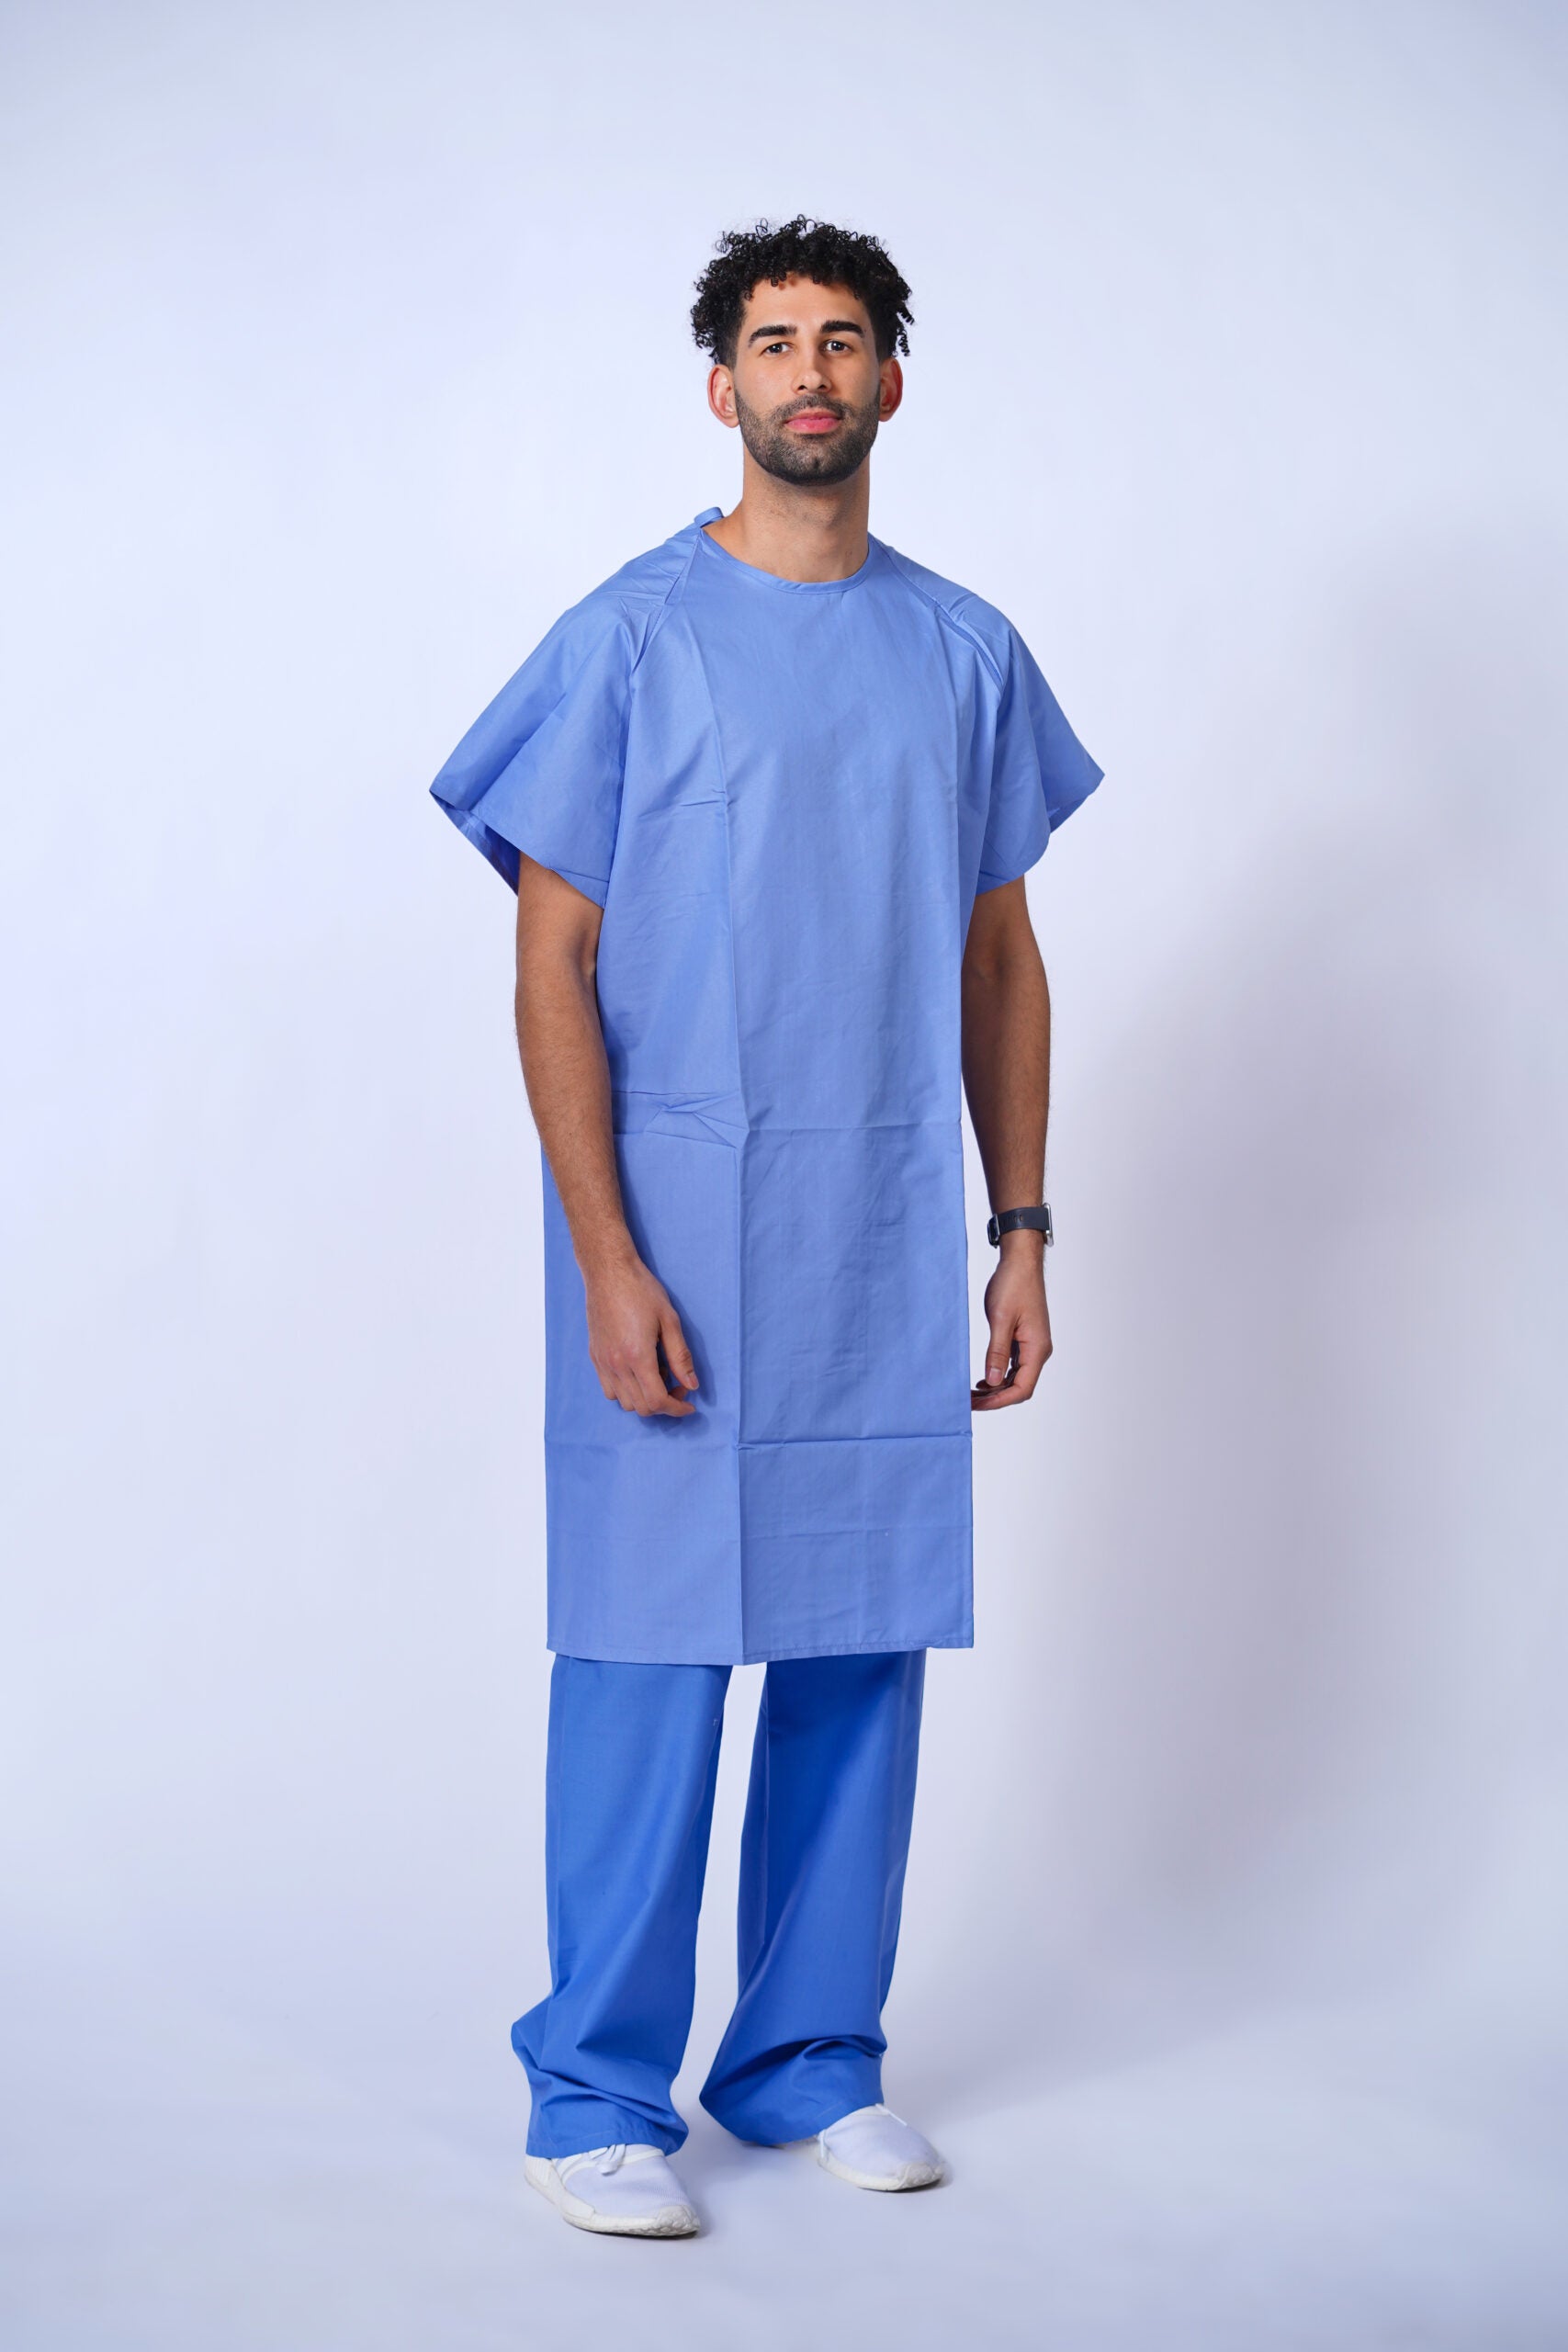 Blue Patient Gowns